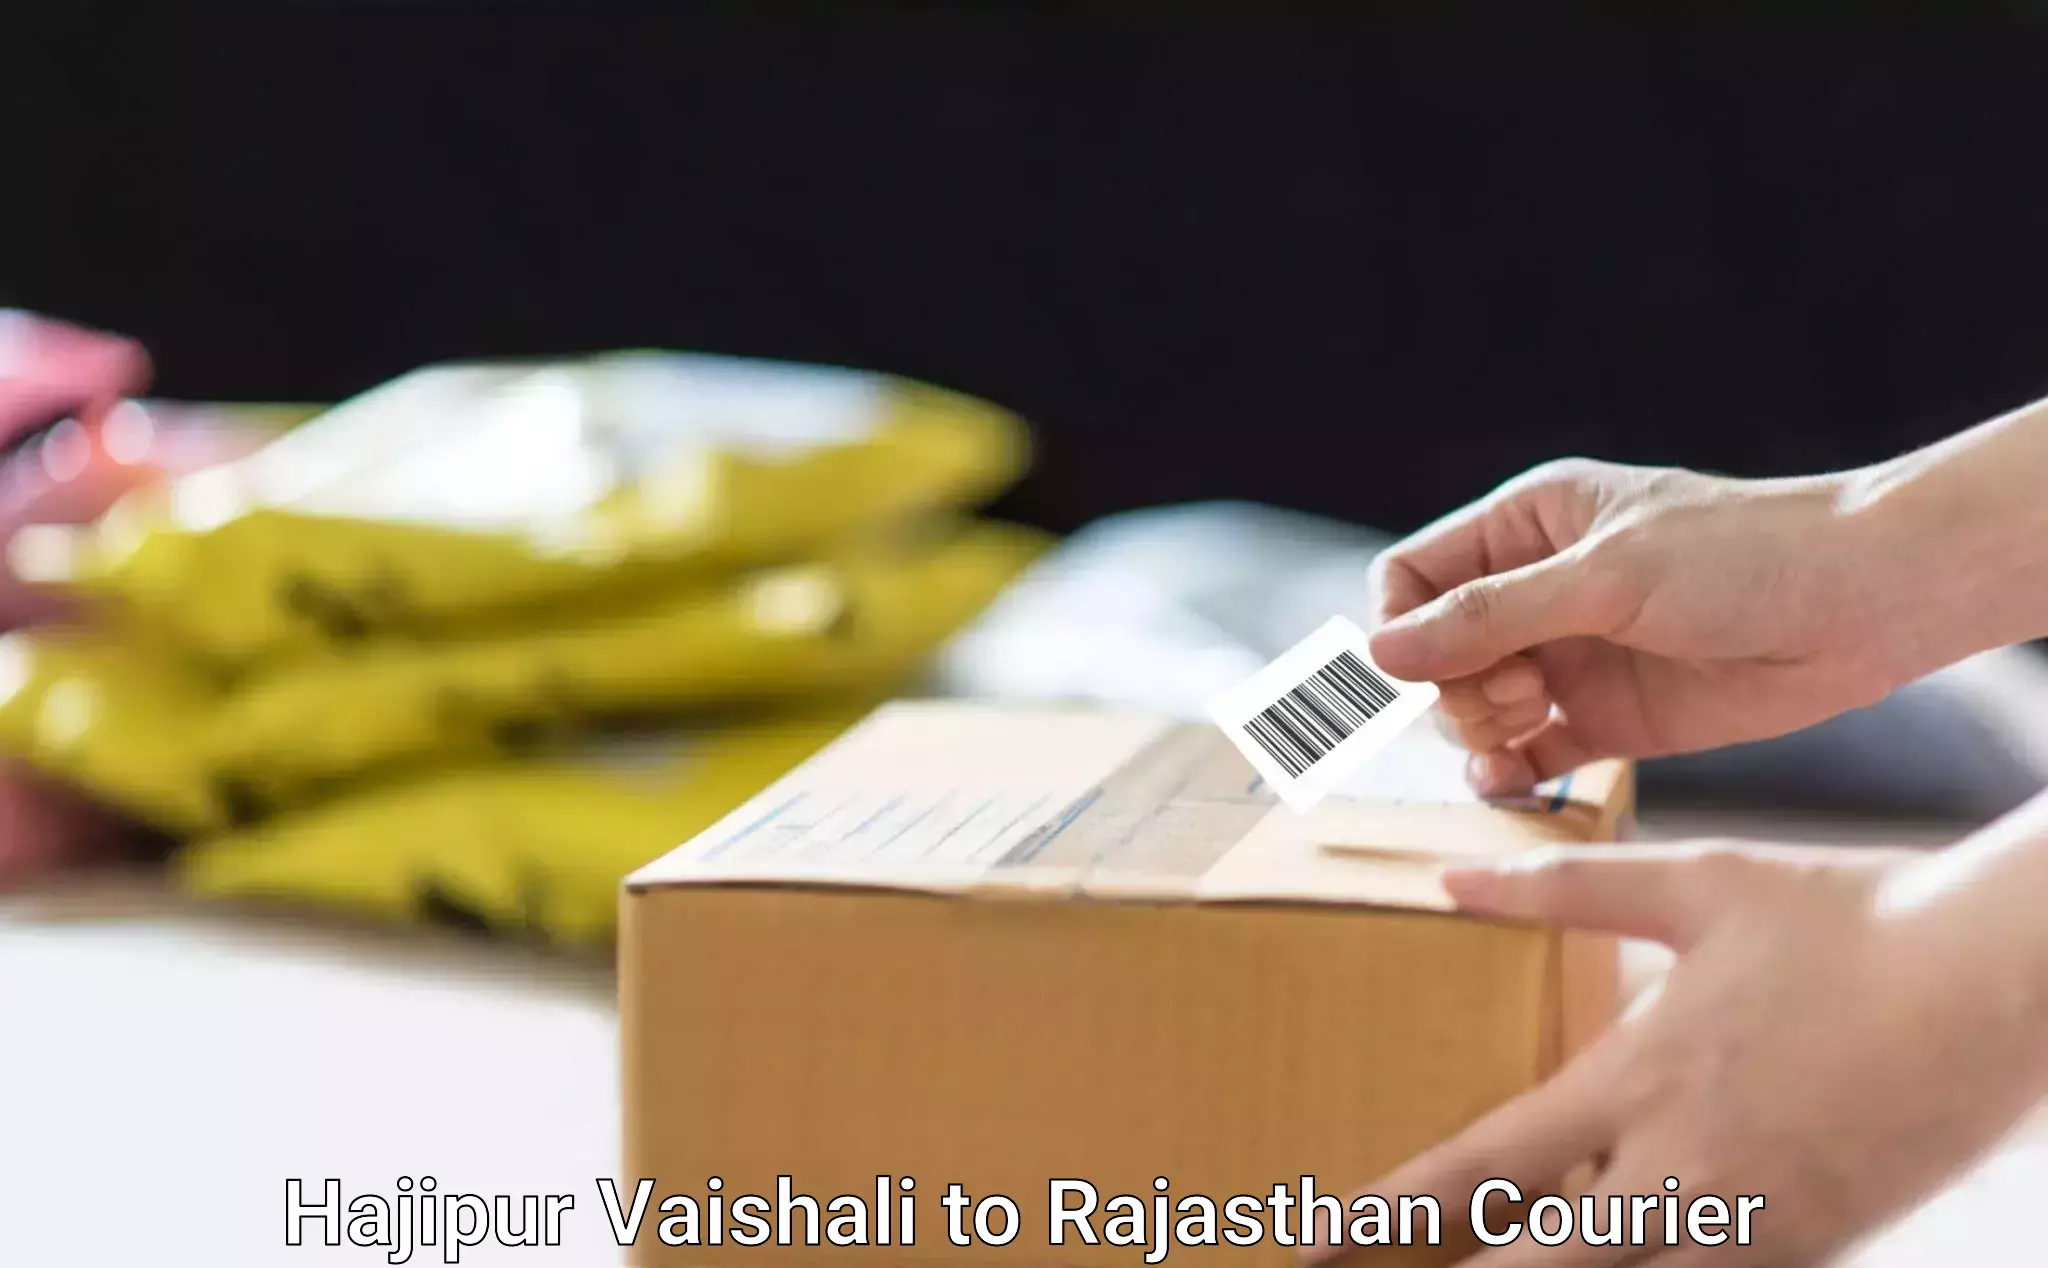 Home shifting experts Hajipur Vaishali to Rajasthan